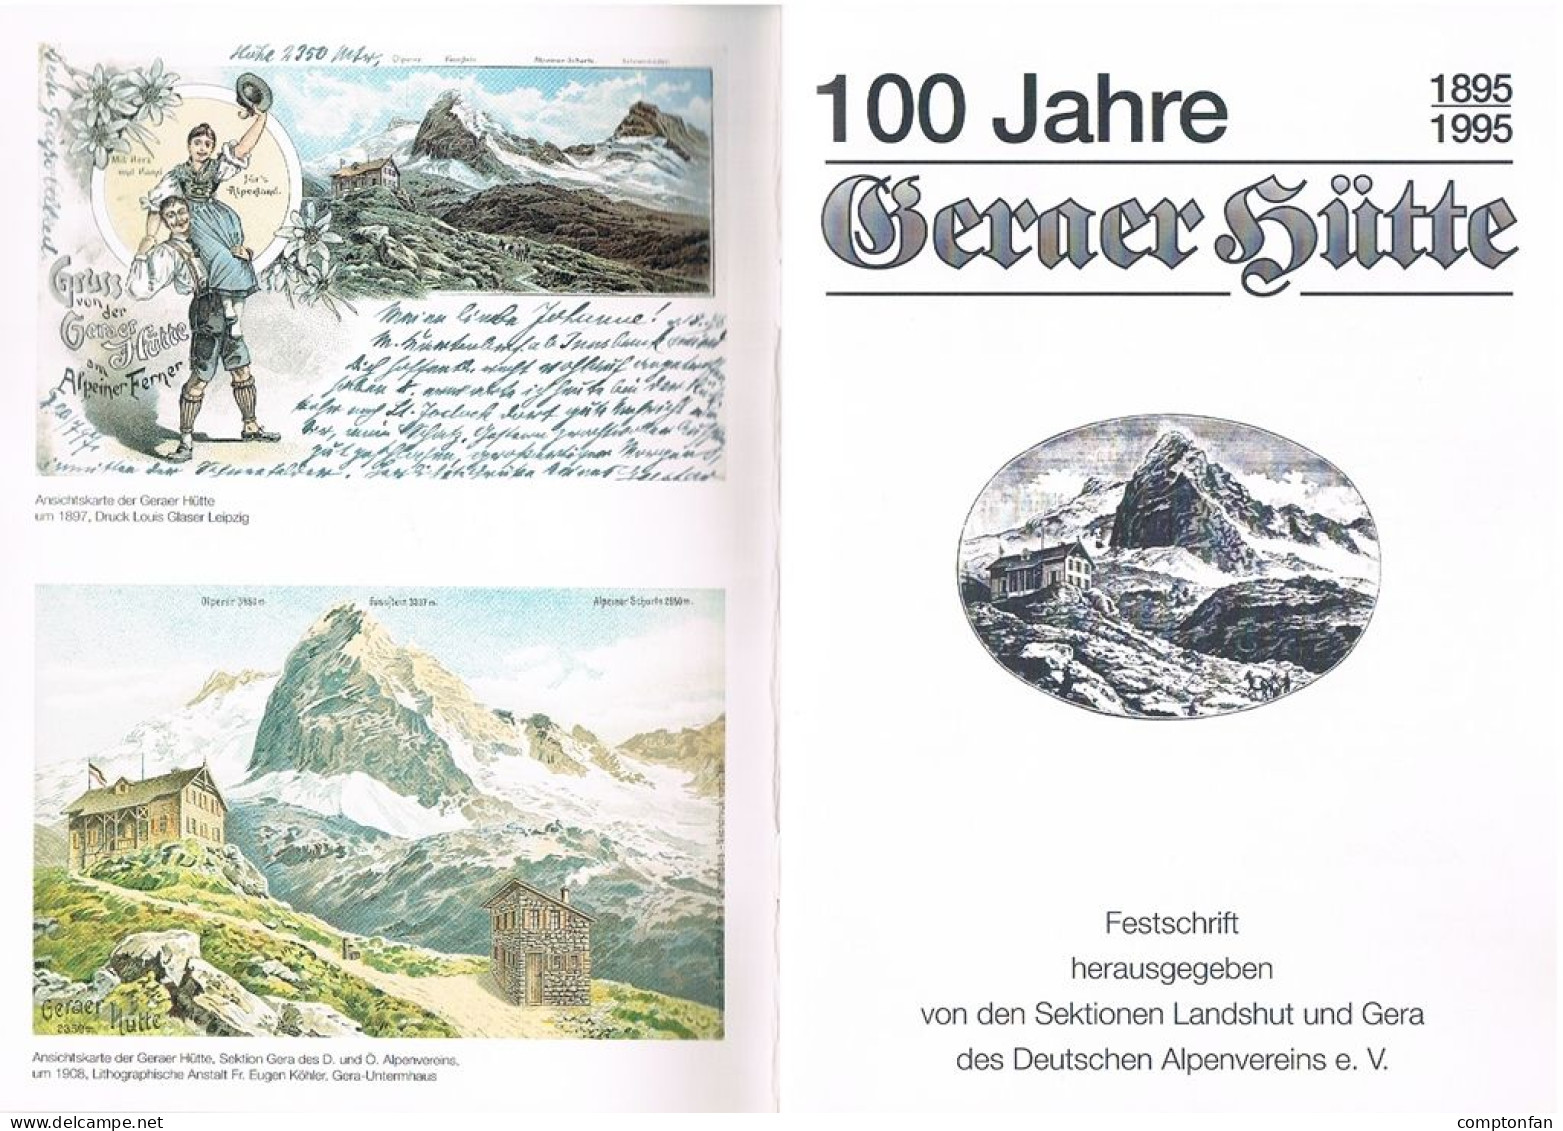 B100 895 Festschrift 100 Jahre Geraer Hütte Deutscher Alpenverein Rarität ! - Libros Antiguos Y De Colección